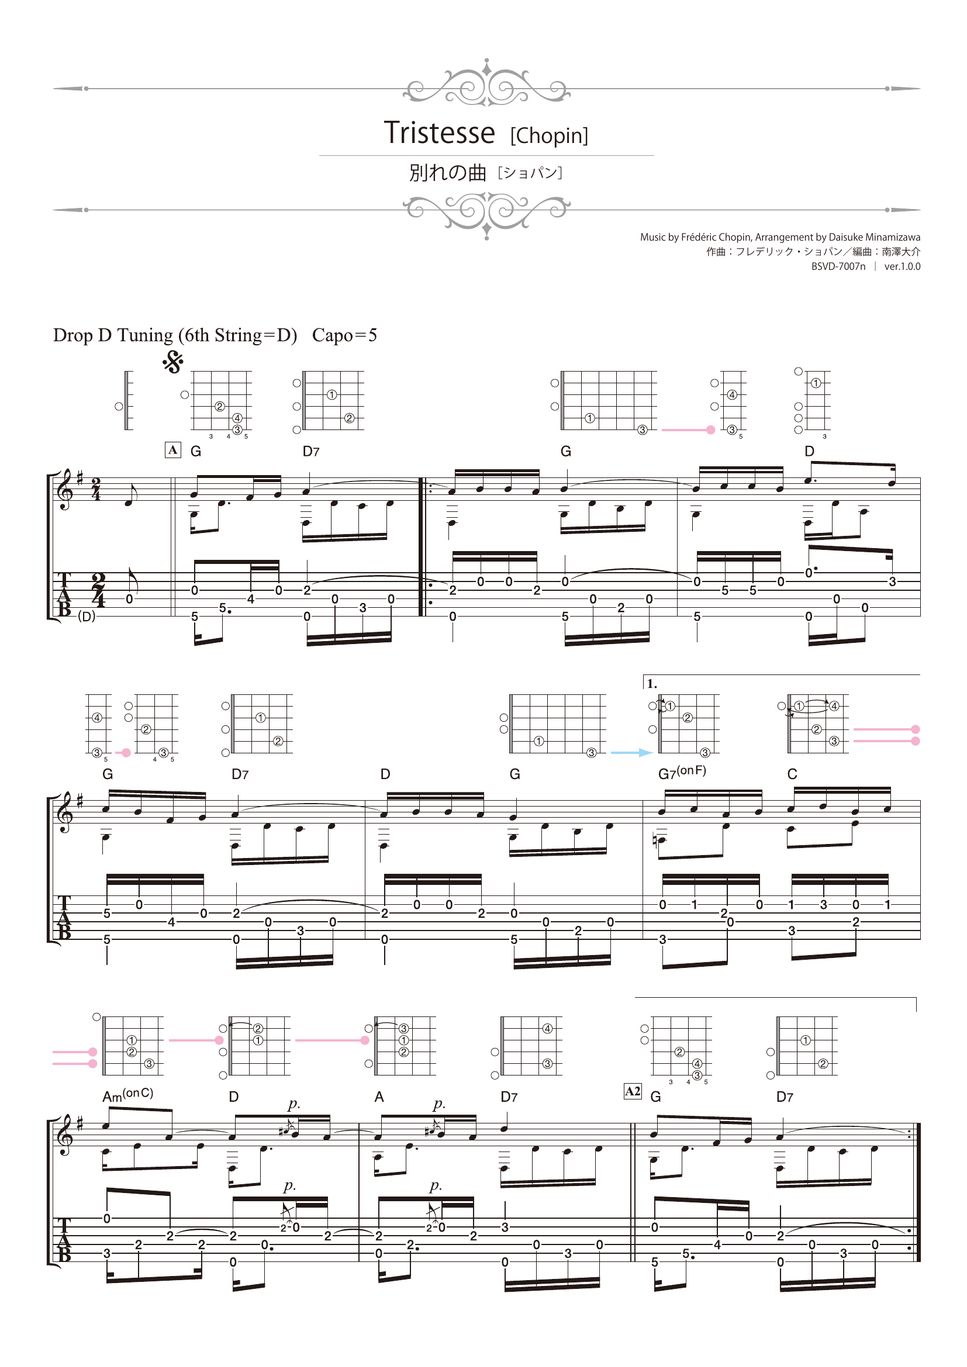 Chopin - Tristesse (Solo Guitar) by Daisuke Minamizawa